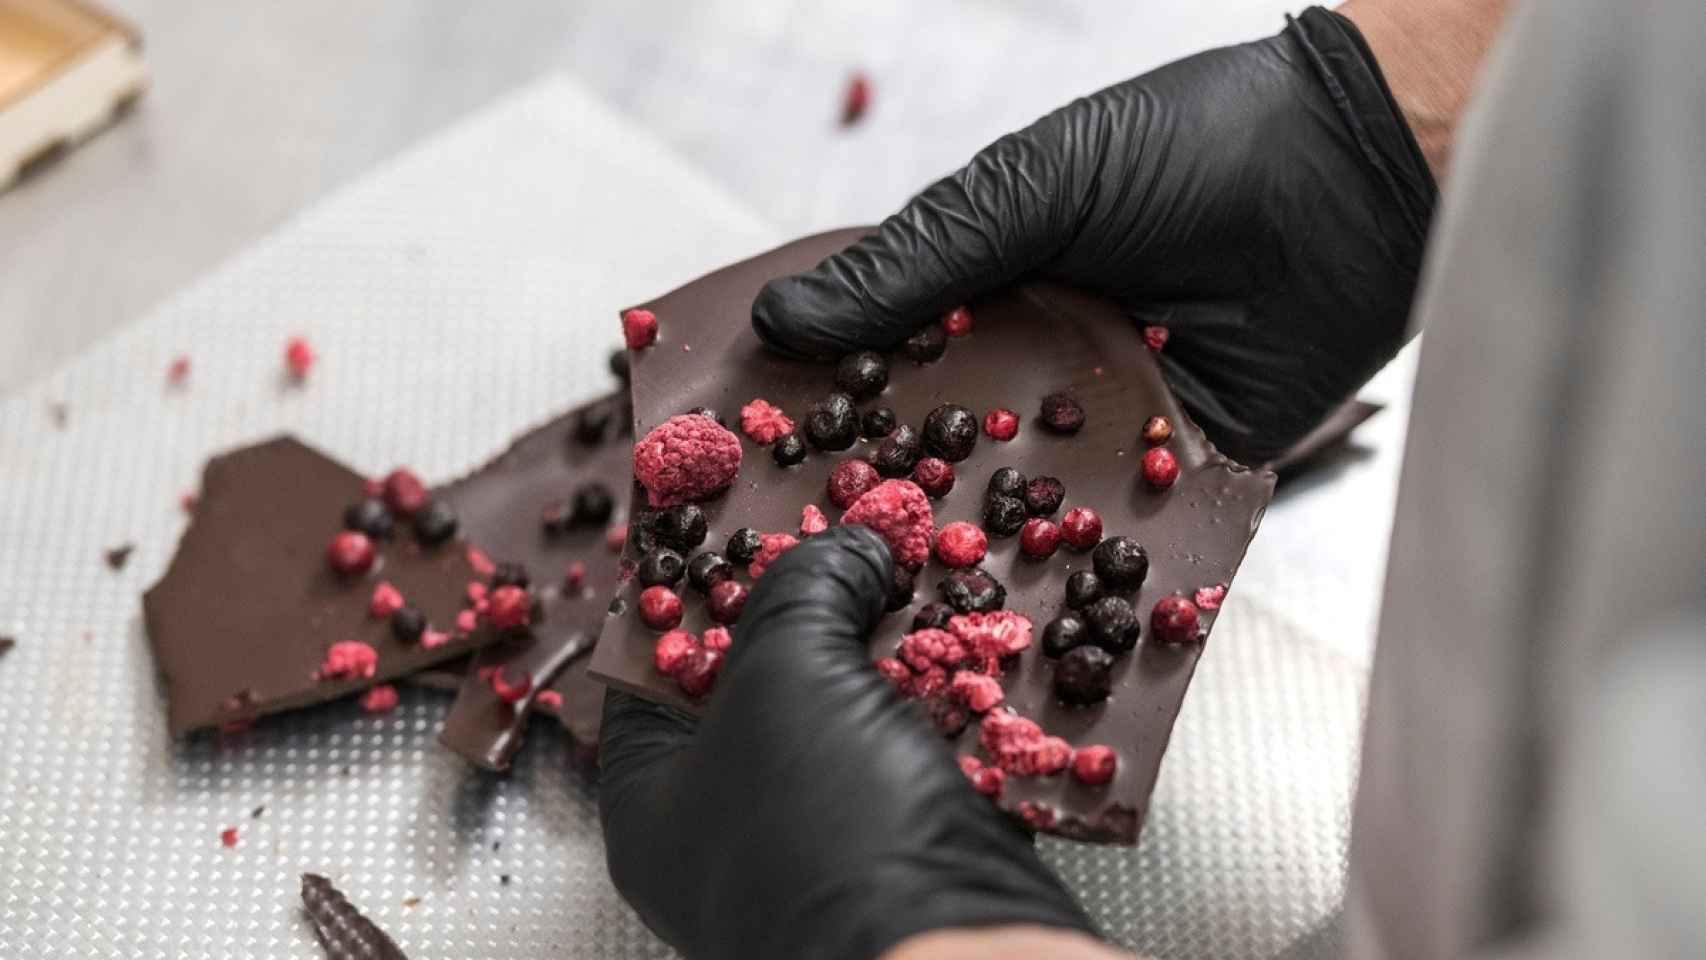 El chocolate es relativamente reciente en la cocina estonia, caracterizada por dar más protagonismo a tradiciones e ingredientes locales.